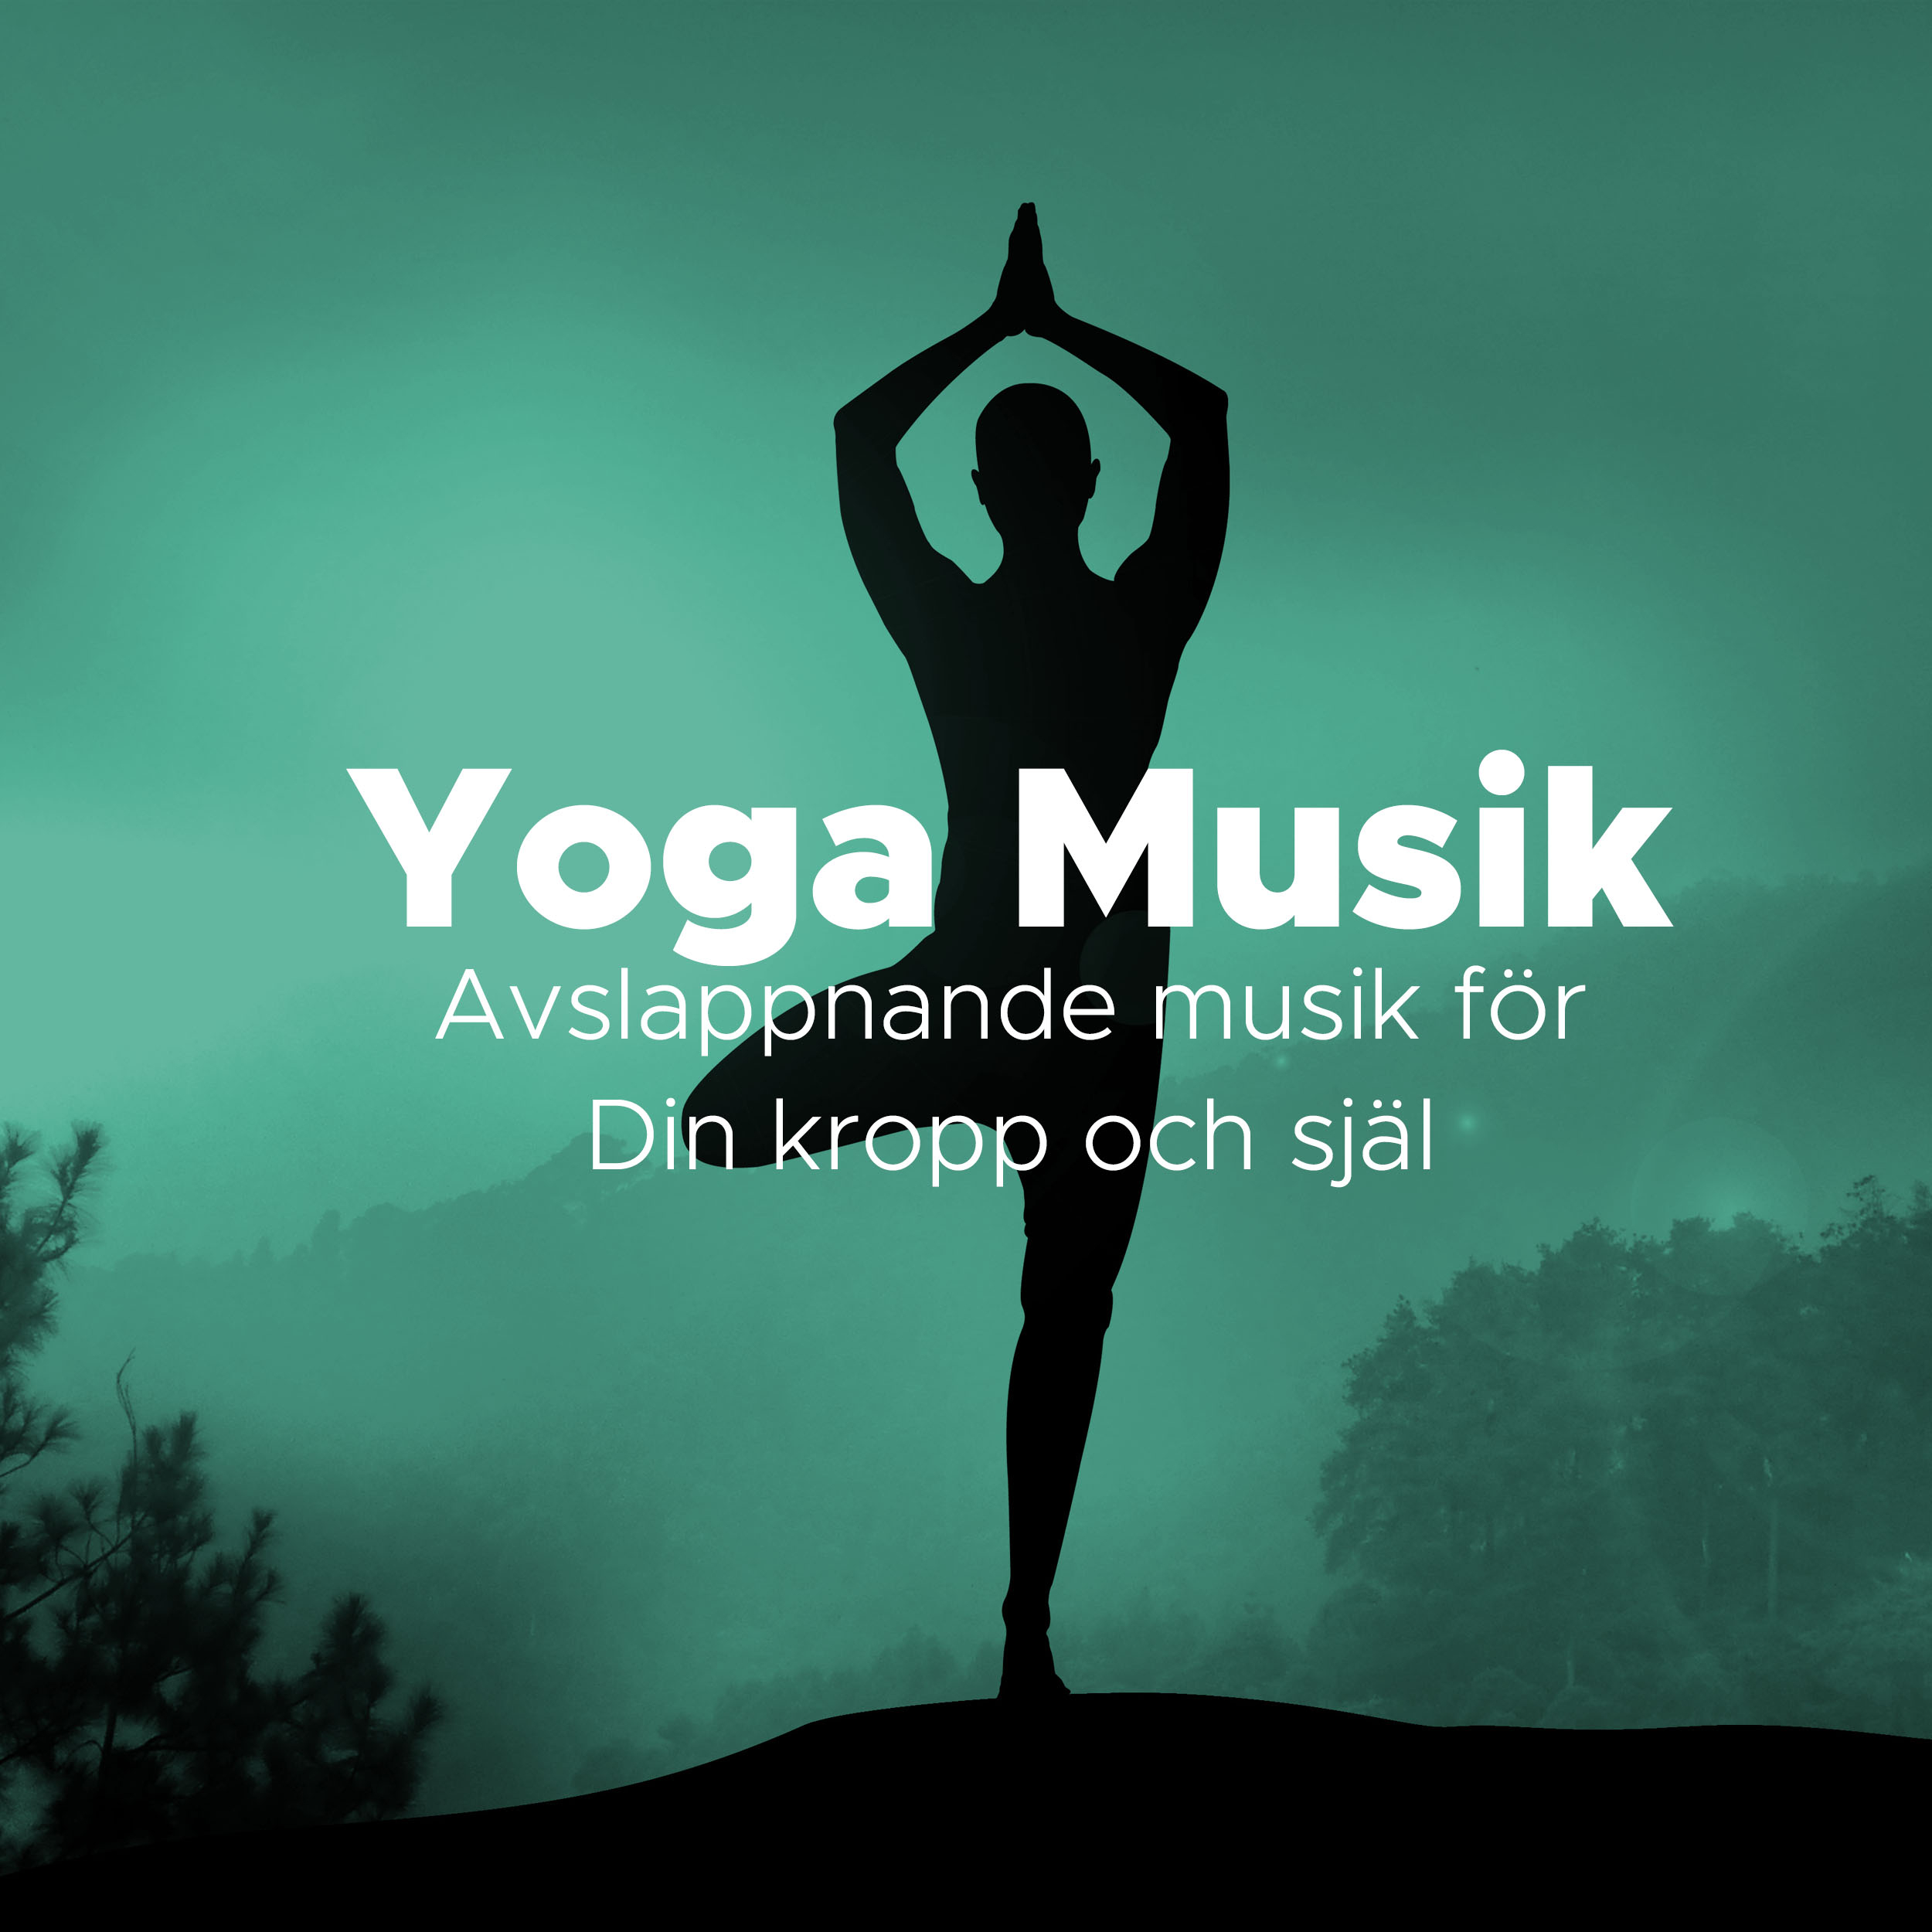 Yoga Musik  Avslappnande musik f r din kropp och sj l